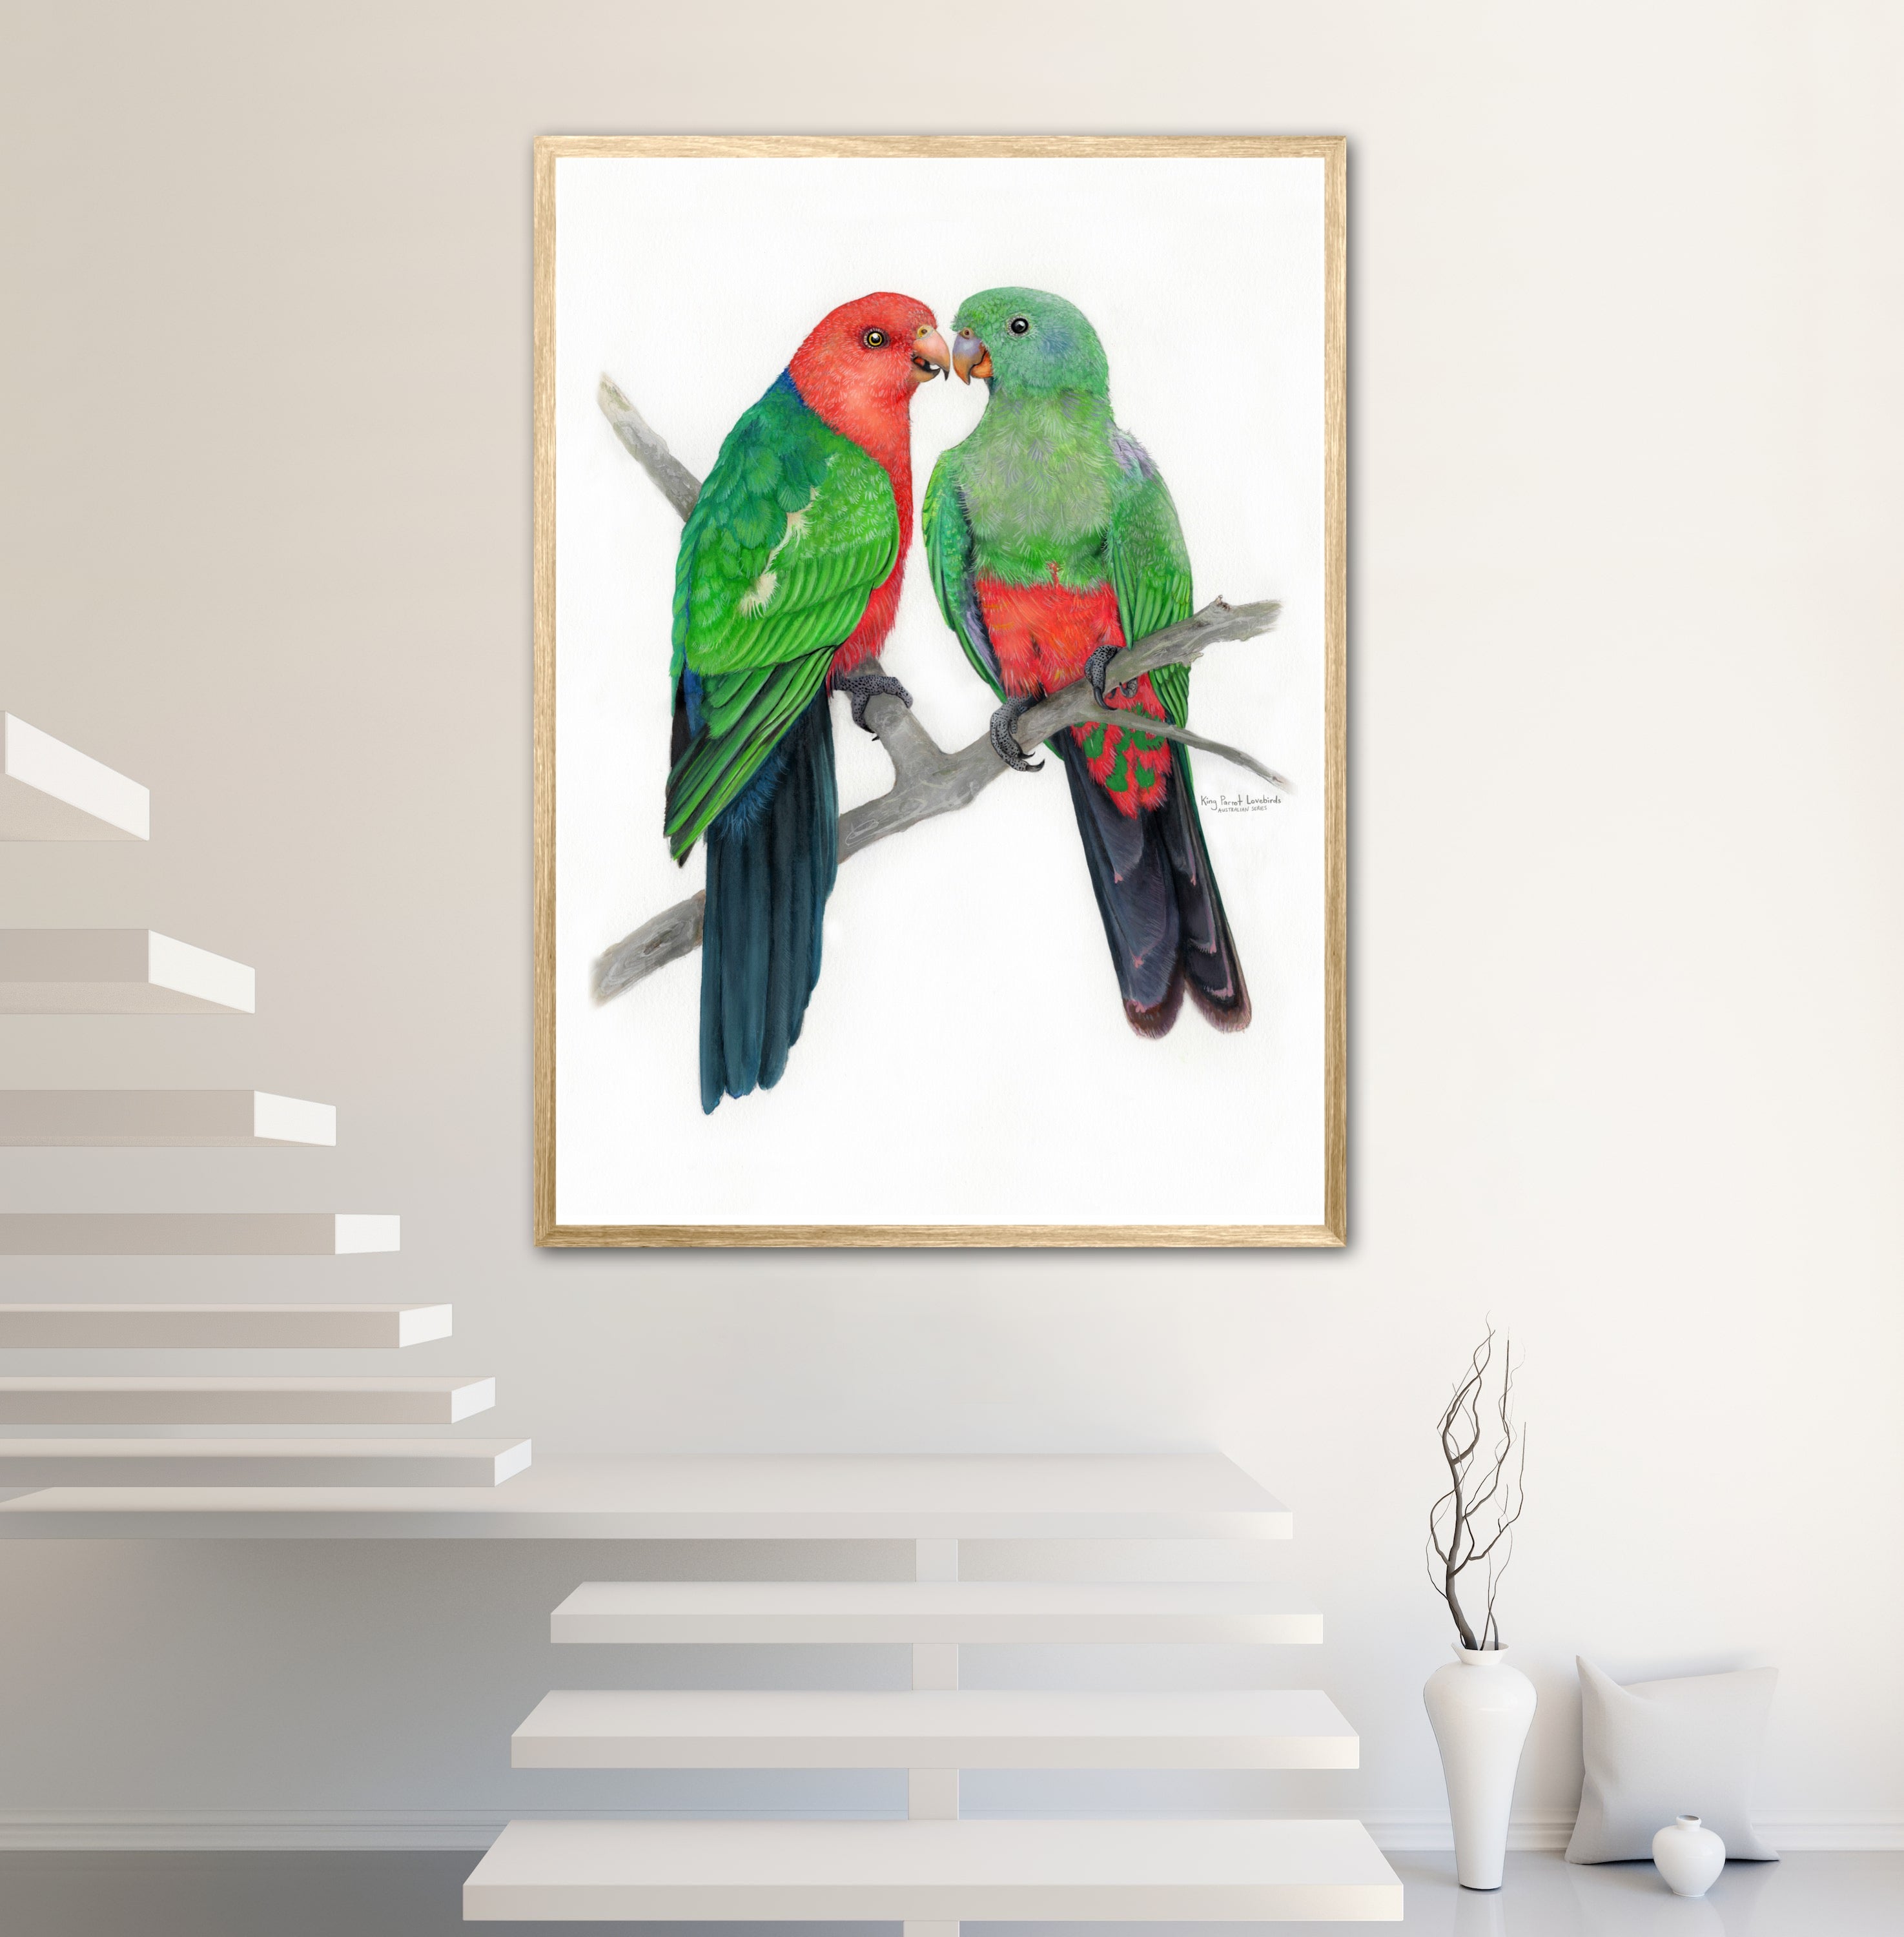 King Parrot Lovebirds